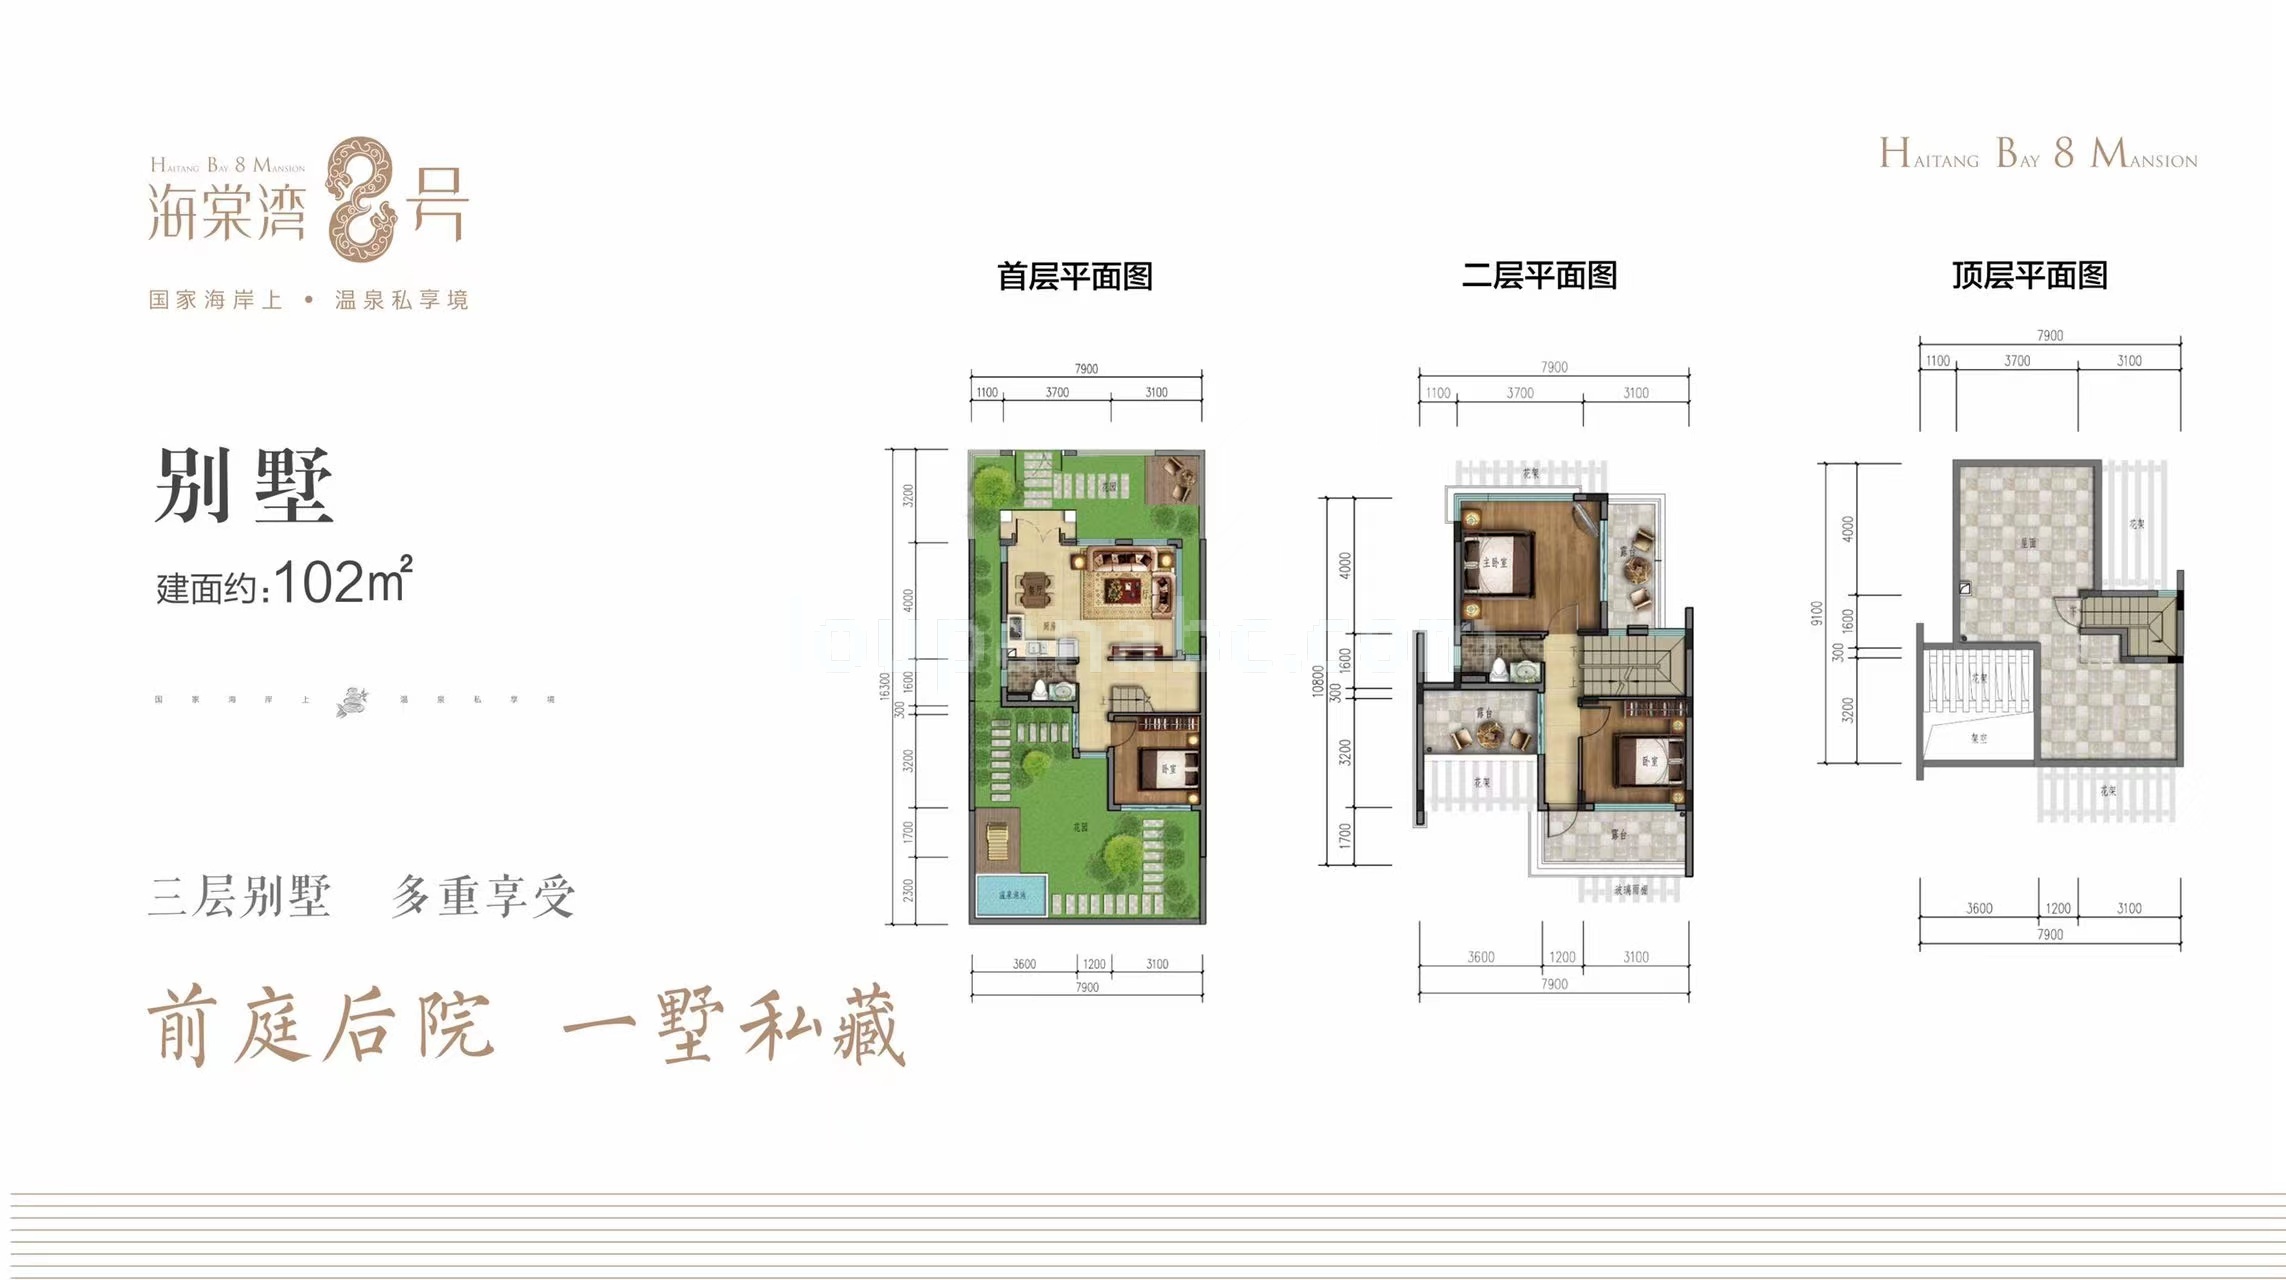 海棠湾8号温泉公馆 联排 A户型 建筑面积103㎡ 可使用面积260㎡ 3房2厅3卫